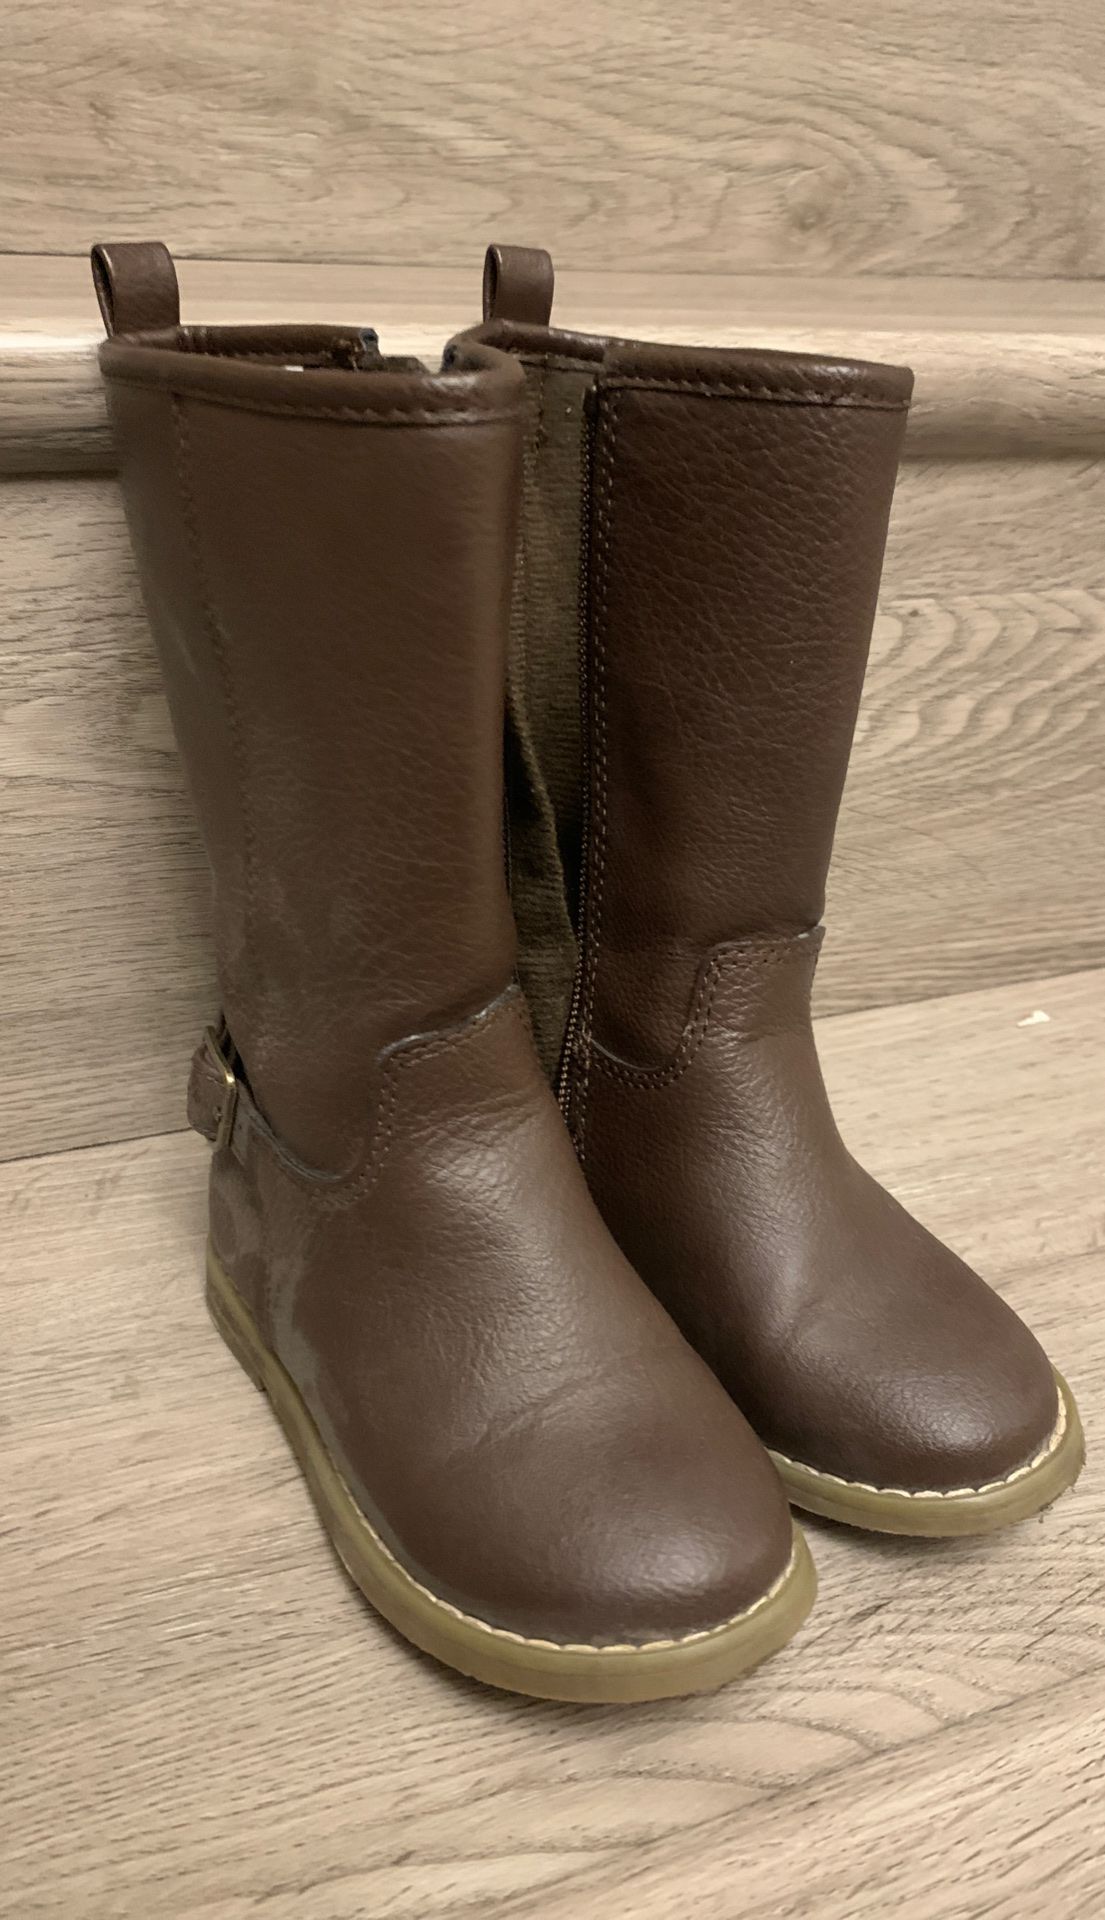 Toddler size 7 girls tall zipper boots